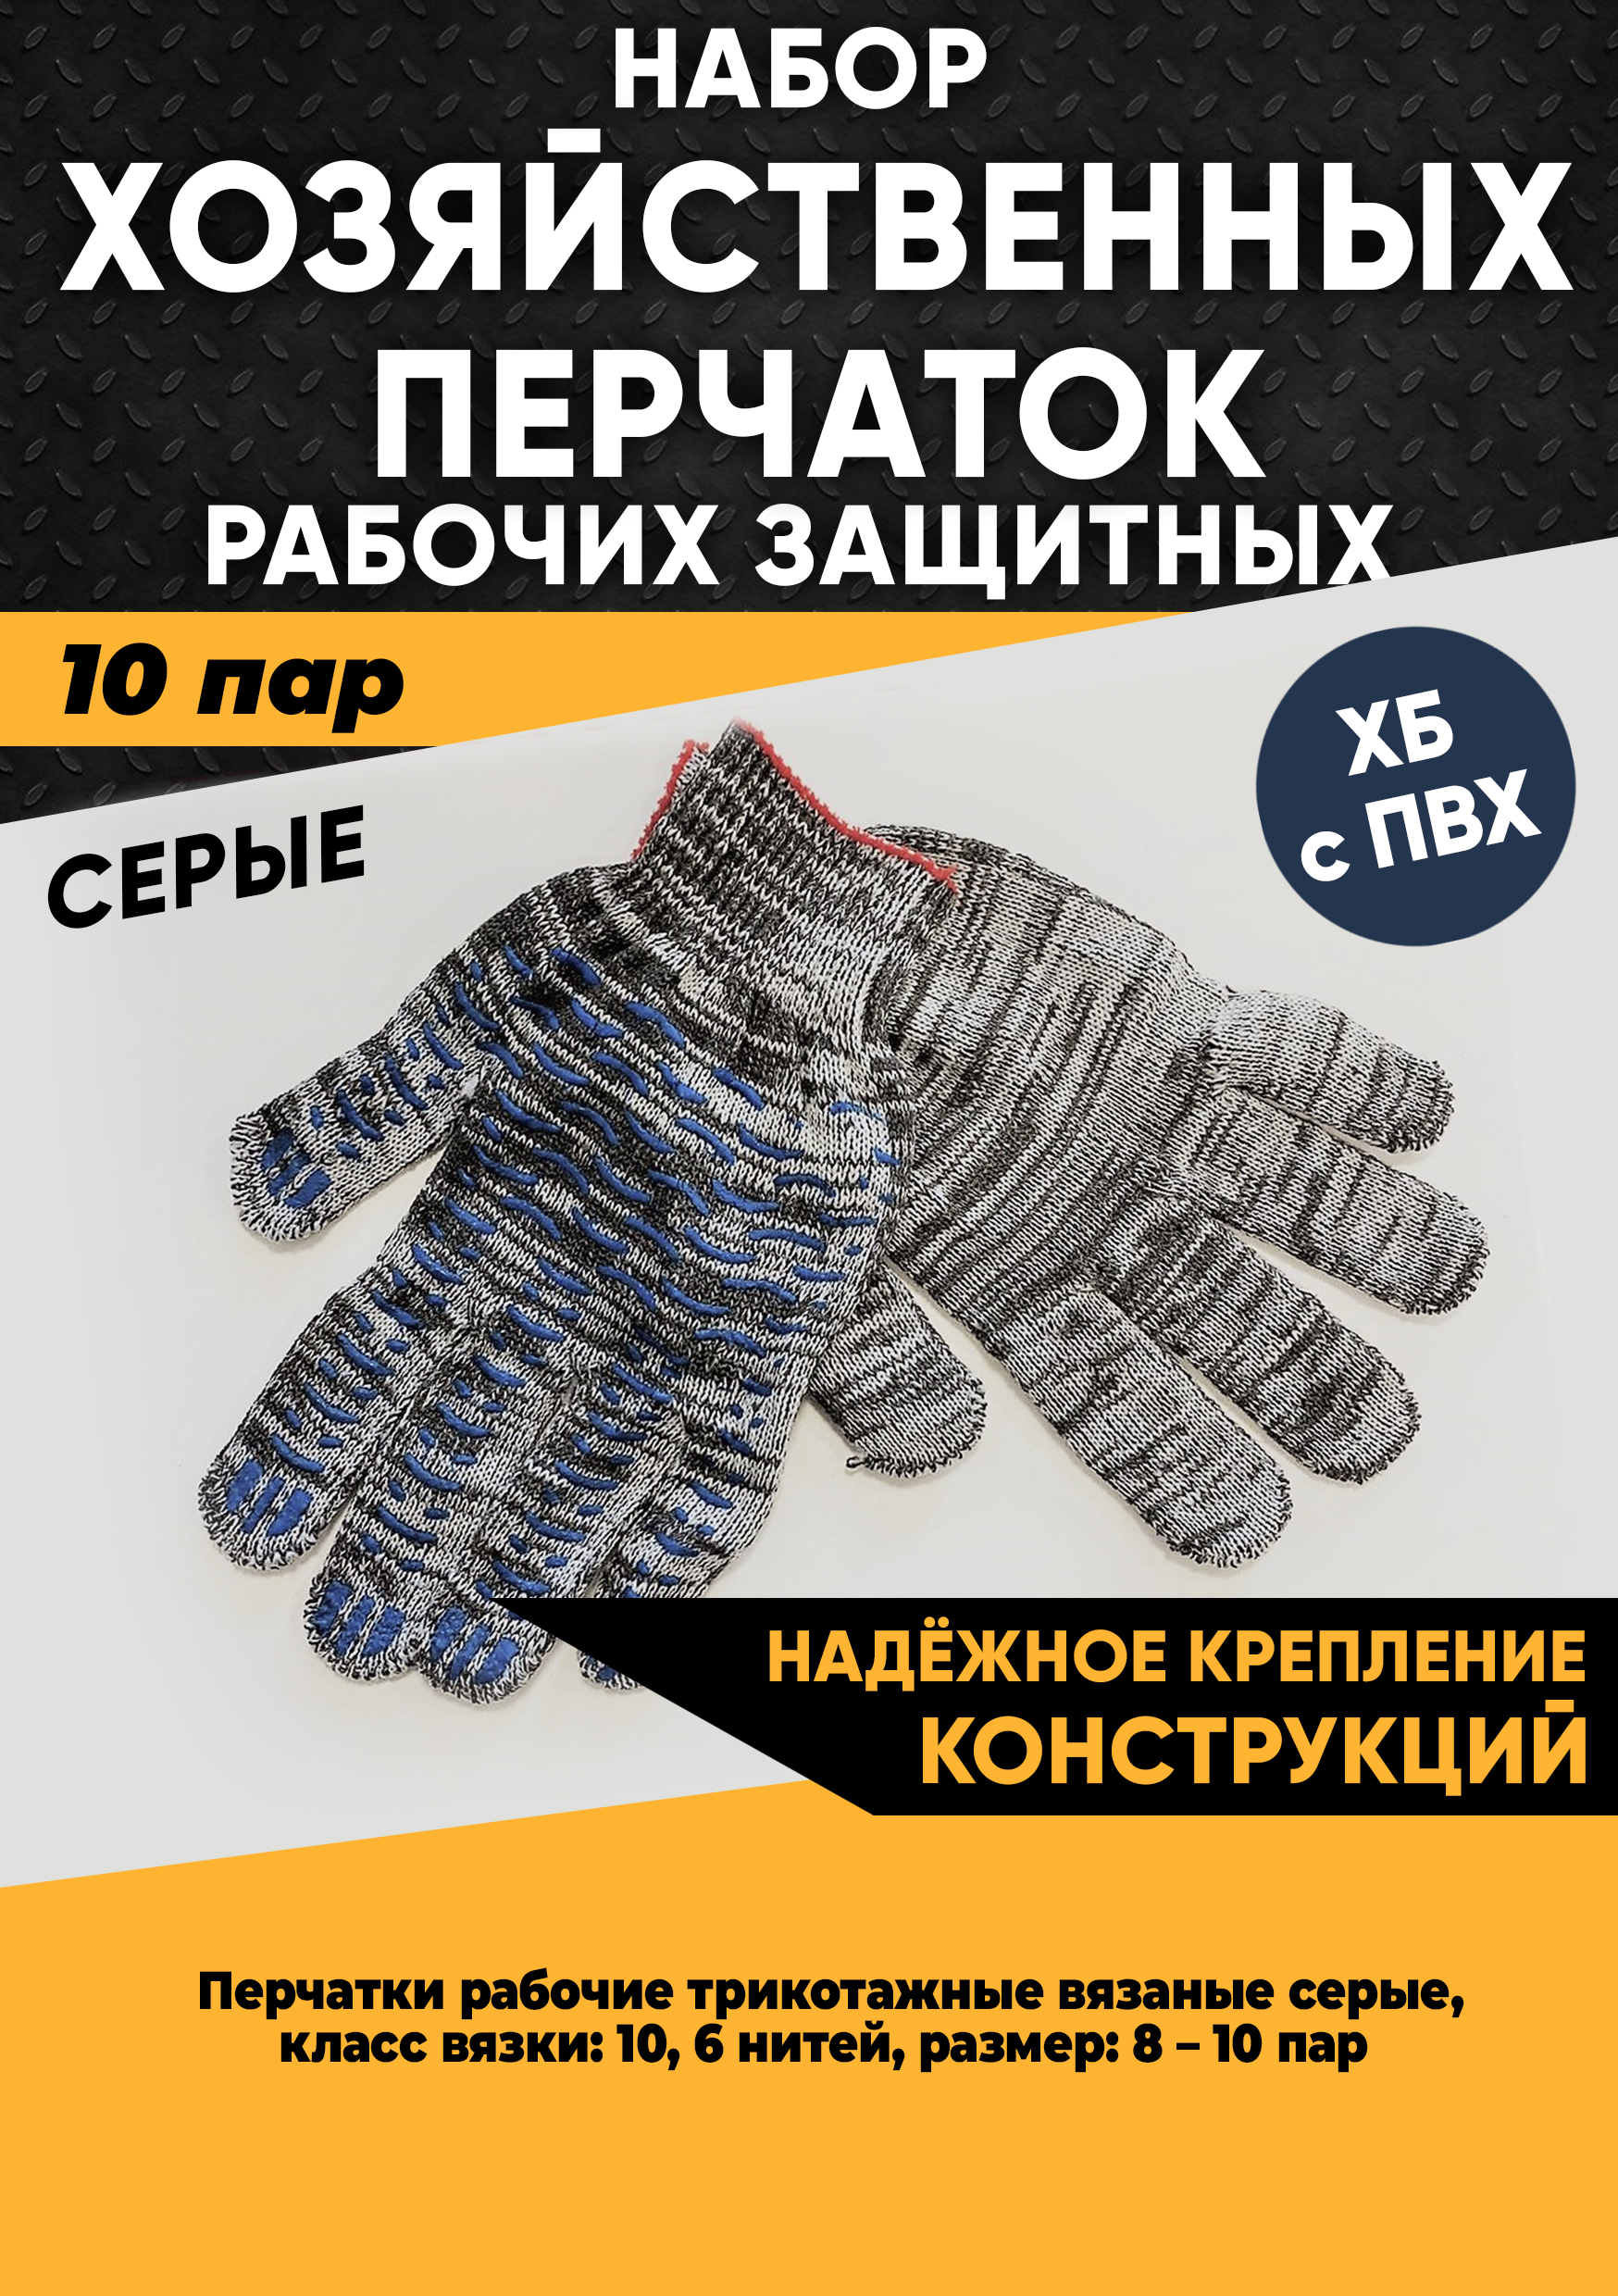 Хозяйственные перчатки KraSimall рабочие защитные ХБ с ПВХ, 6 нитей, серые, 10 пар, 100265